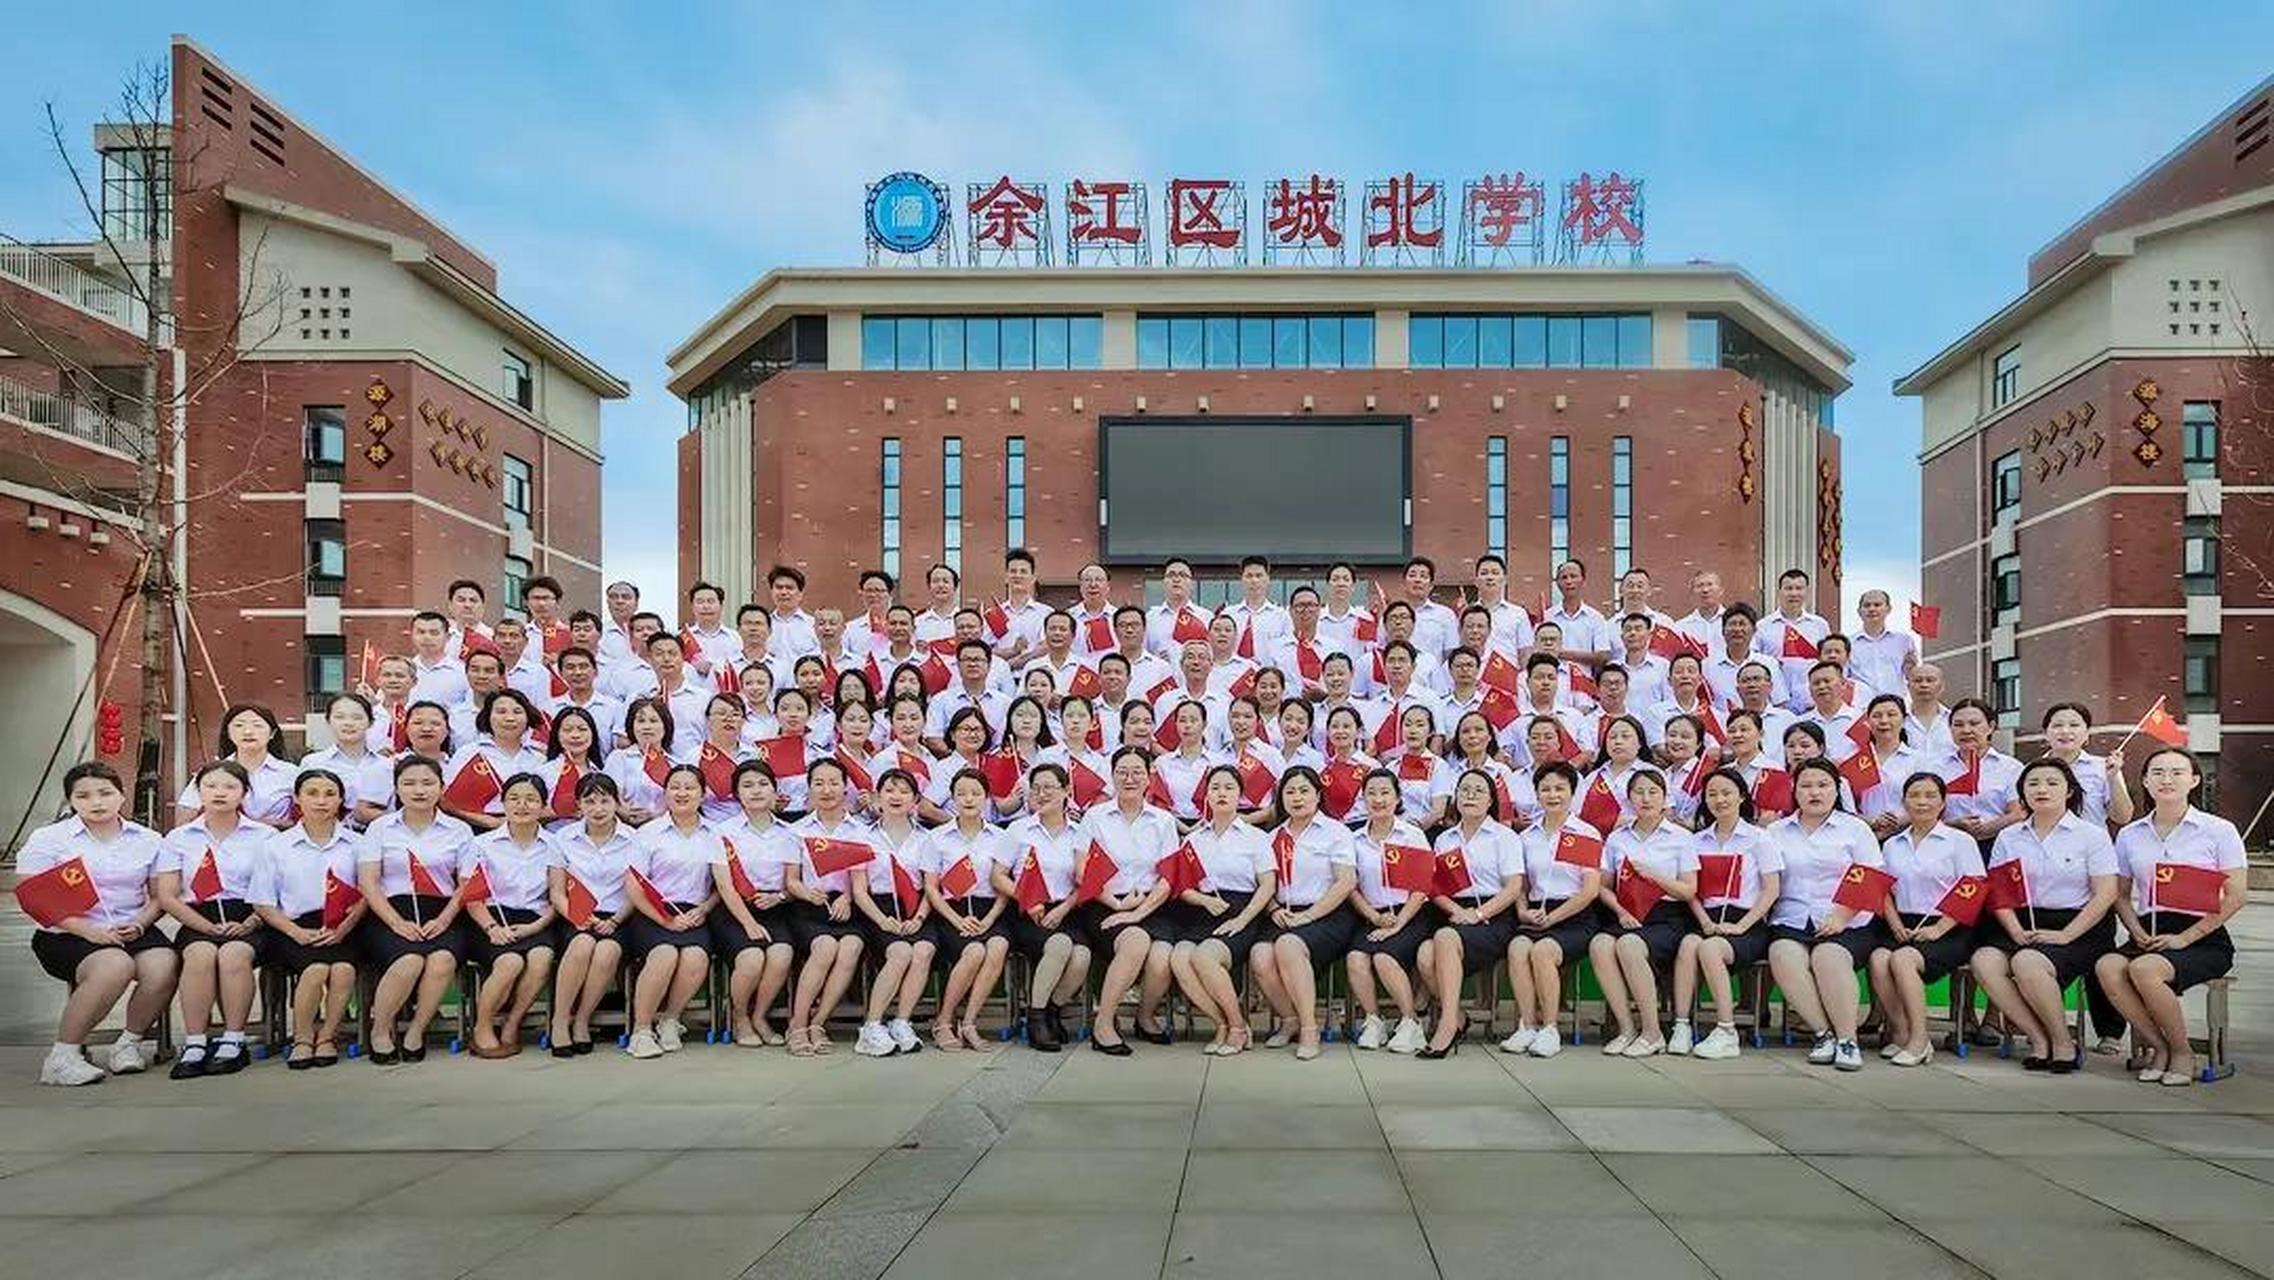 以下是来自江西省鹰潭市余江区城北学校的教师团队的幸福合影